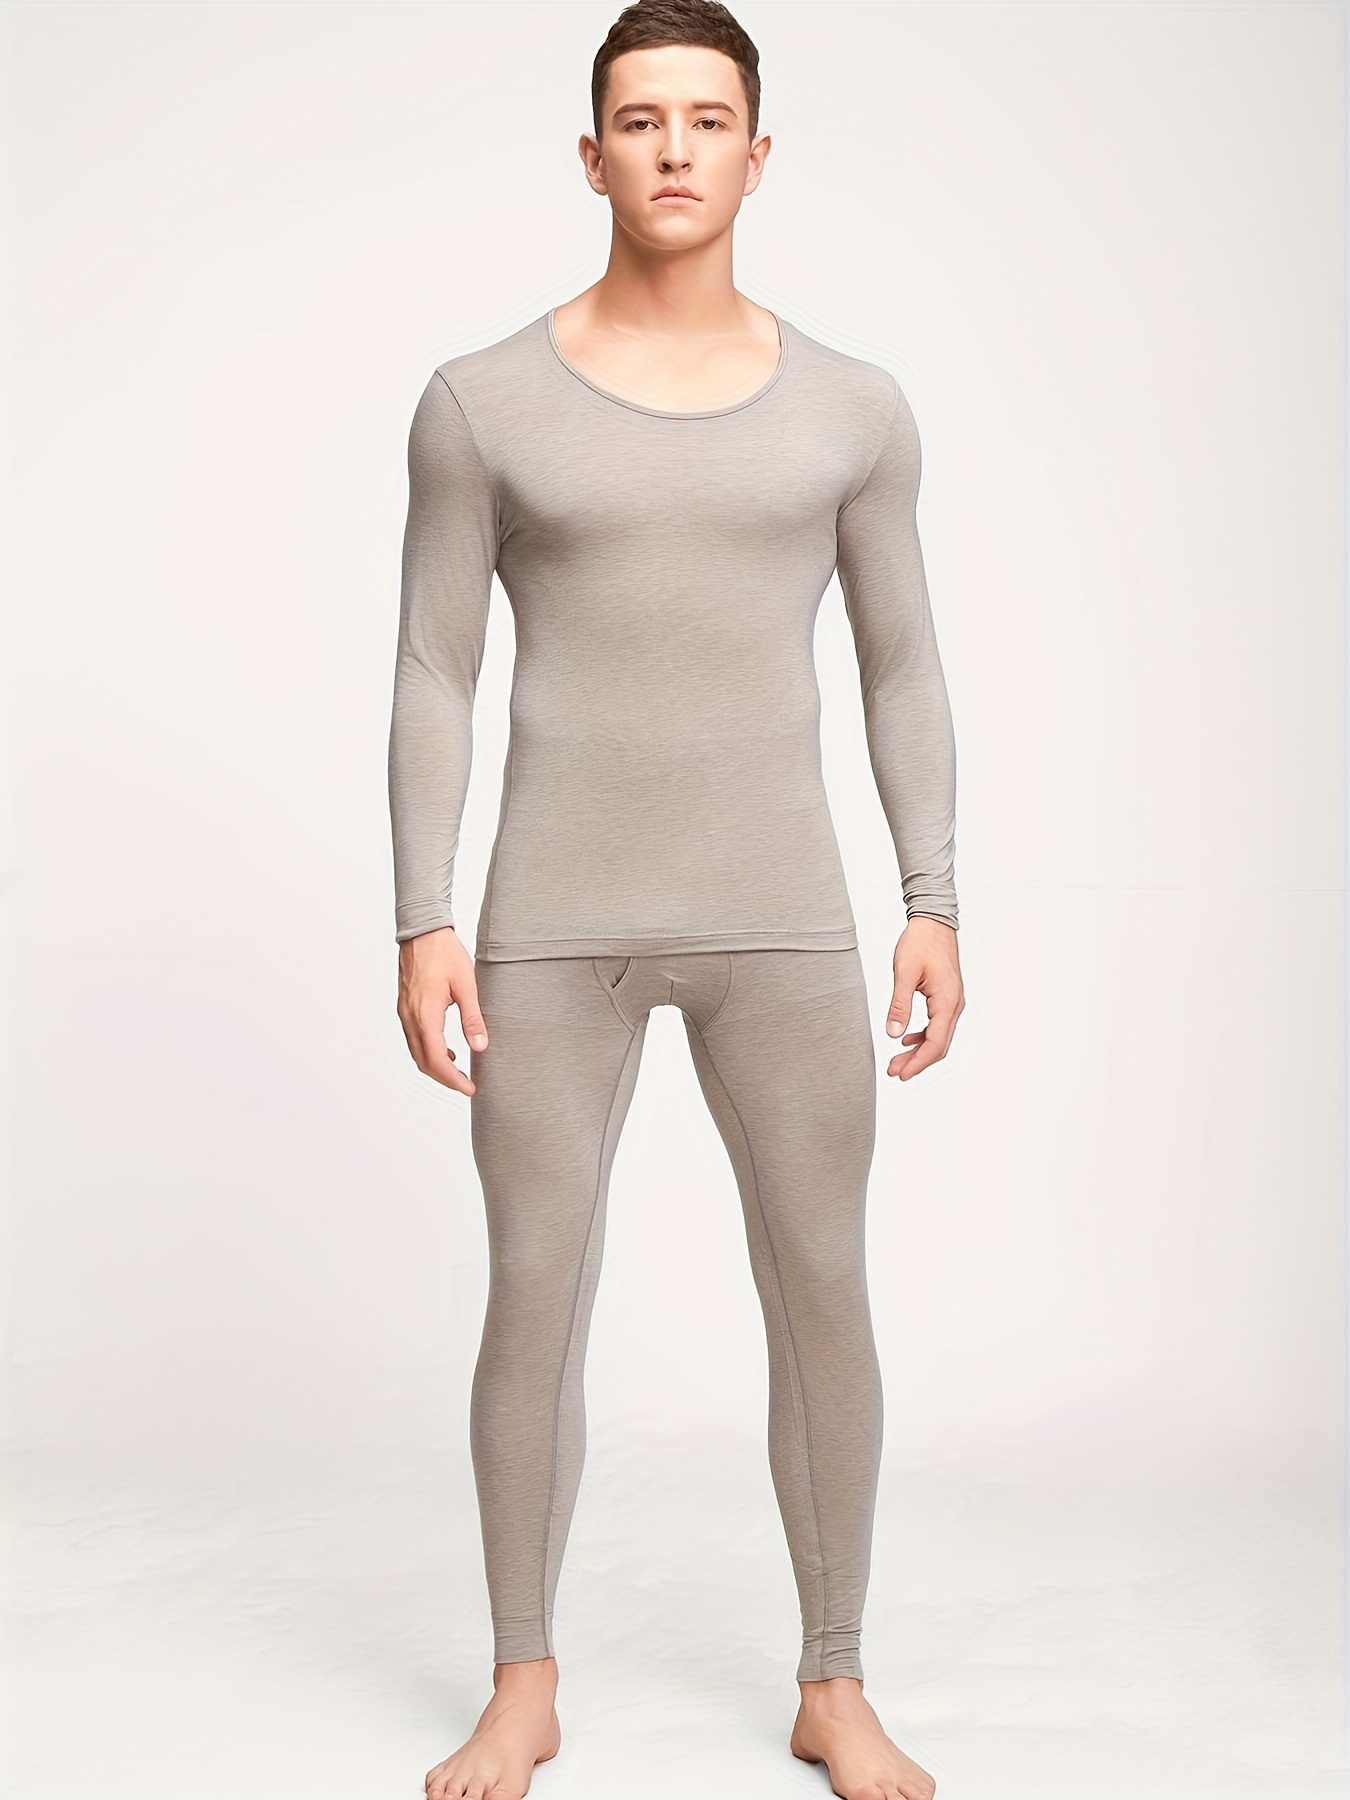 Ropa interior térmica para hombre, conjunto de pantalones largos con forro  polar capa base superior